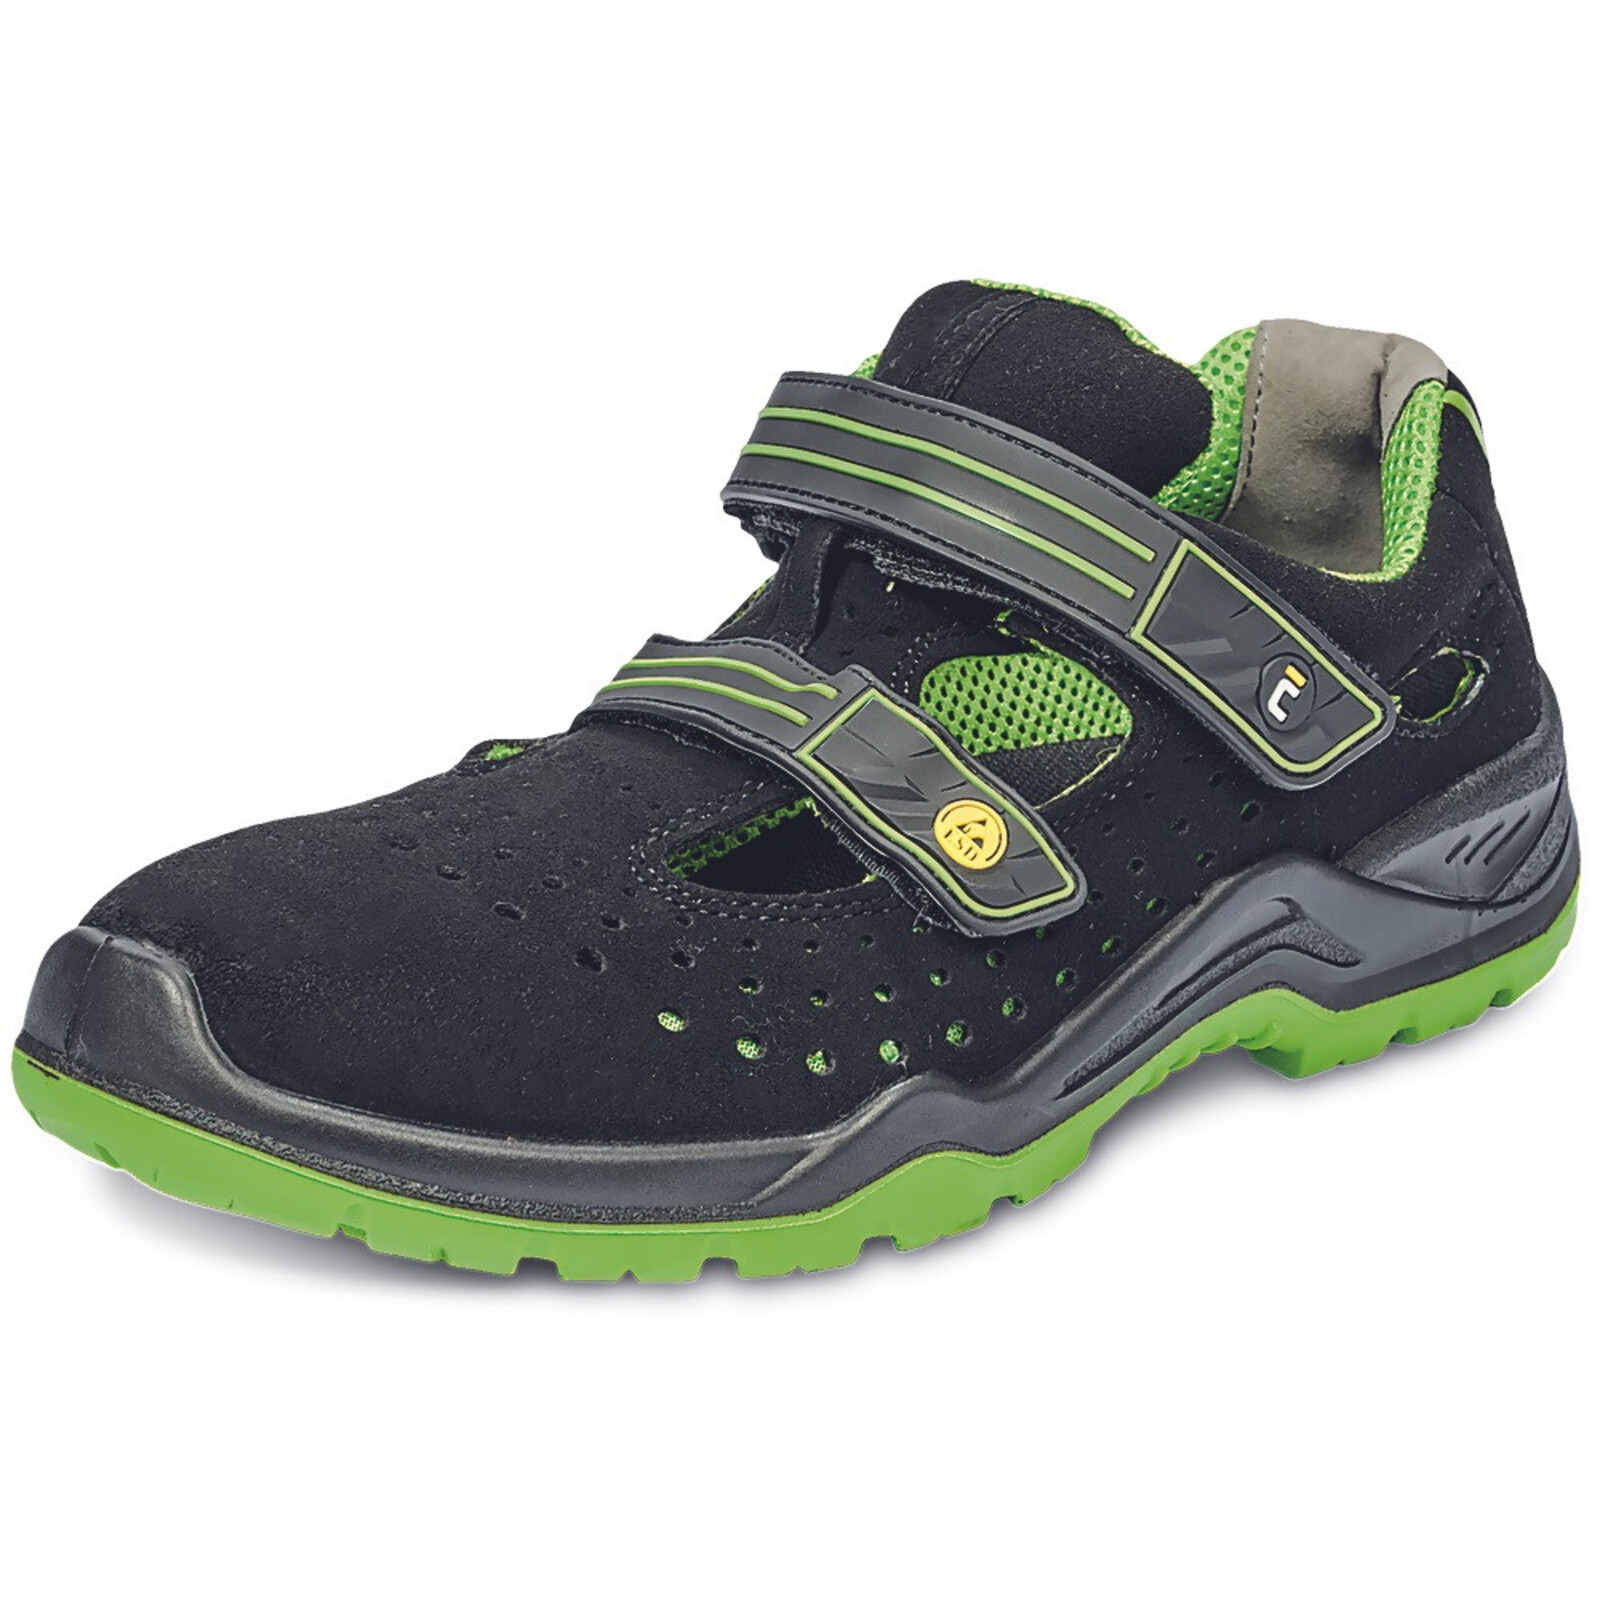 Bezpečnostné sandále Cerva Halwill MF ESD S1P SRC - veľkosť: 45, farba: čierna/zelená